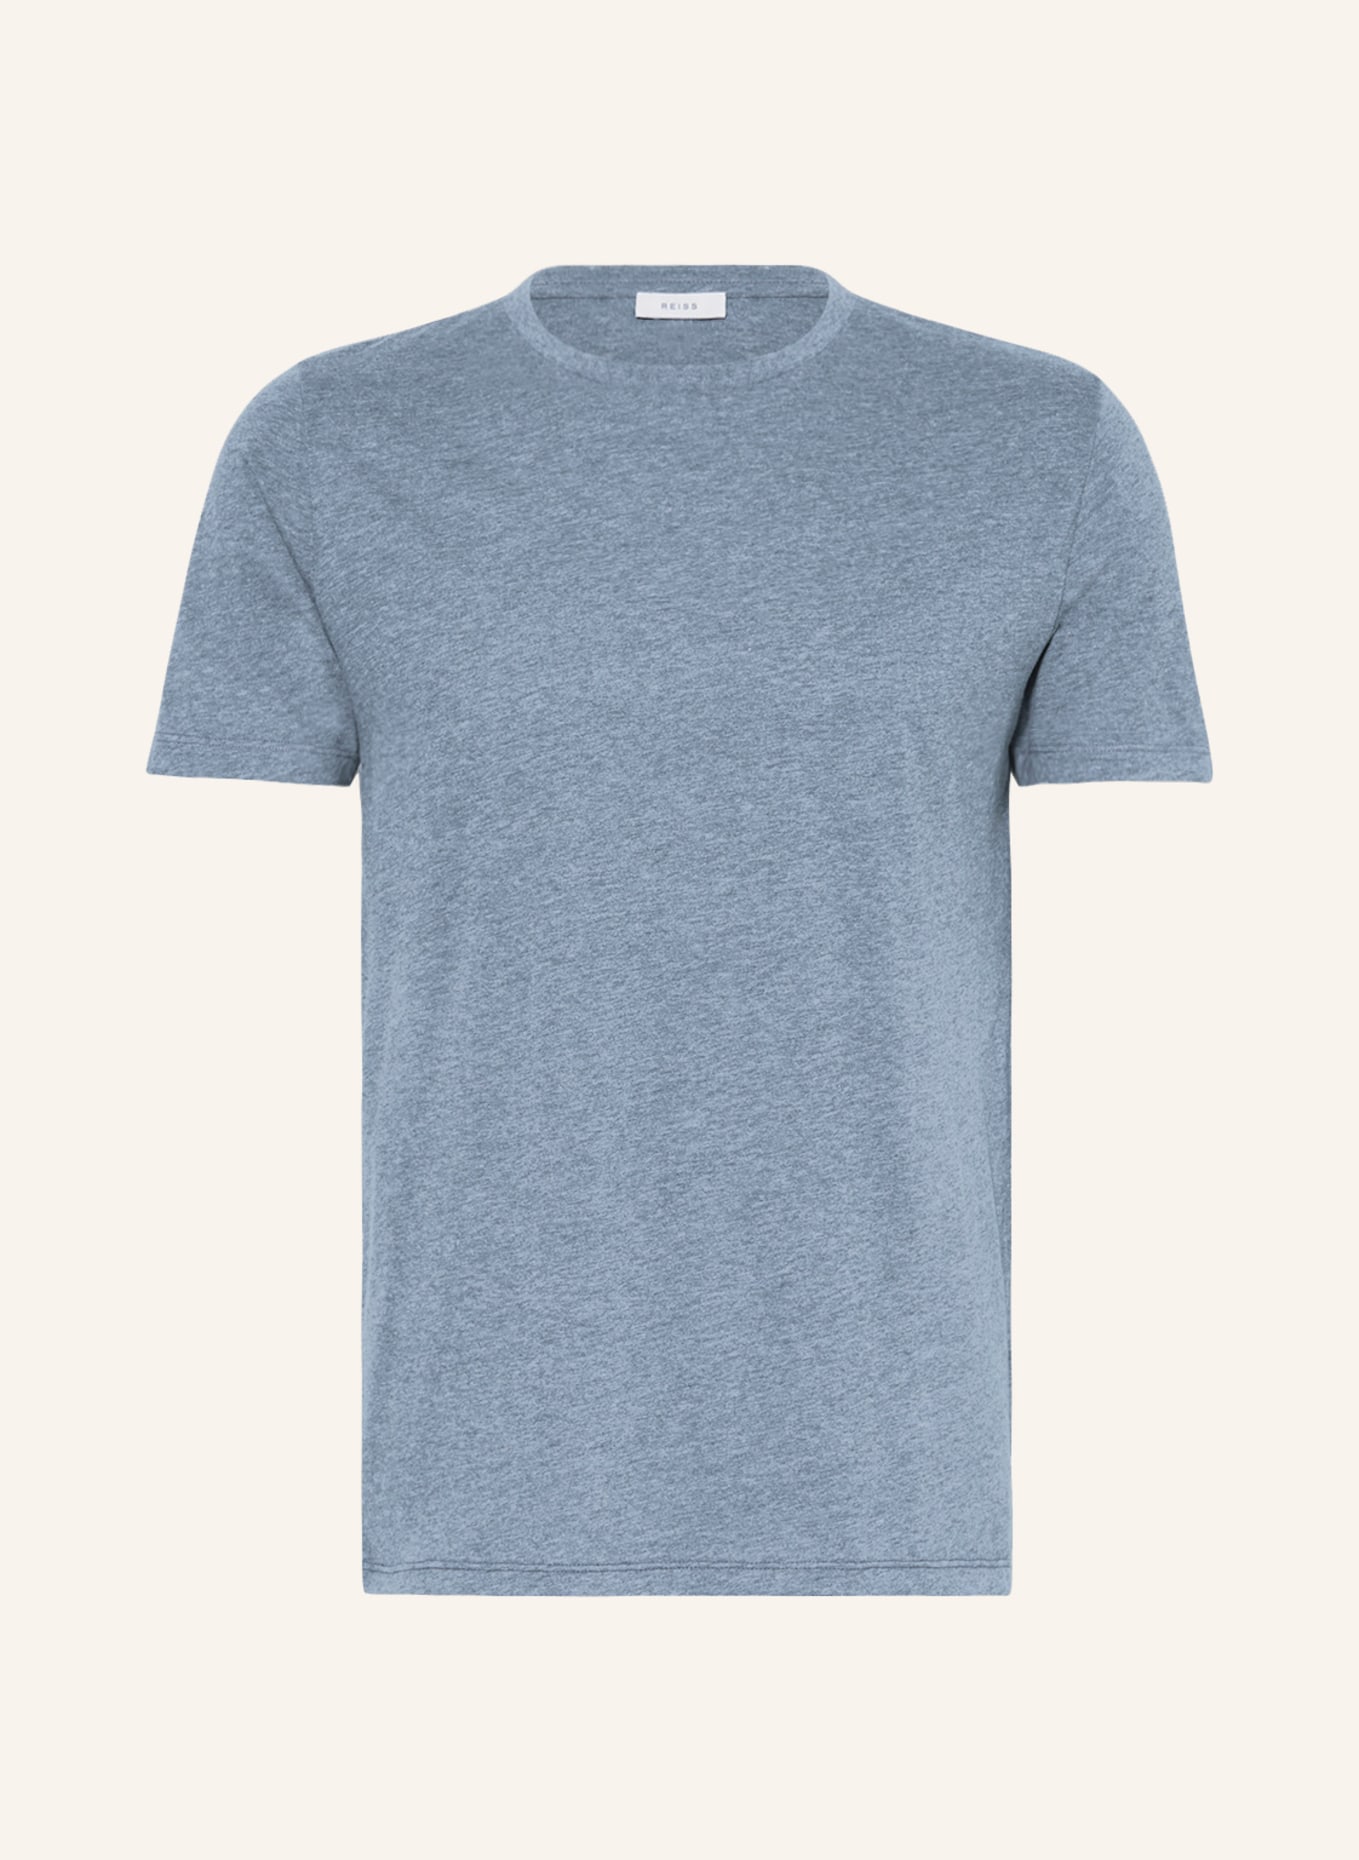 REISS T-Shirt BLESS, Farbe: BLAU (Bild 1)